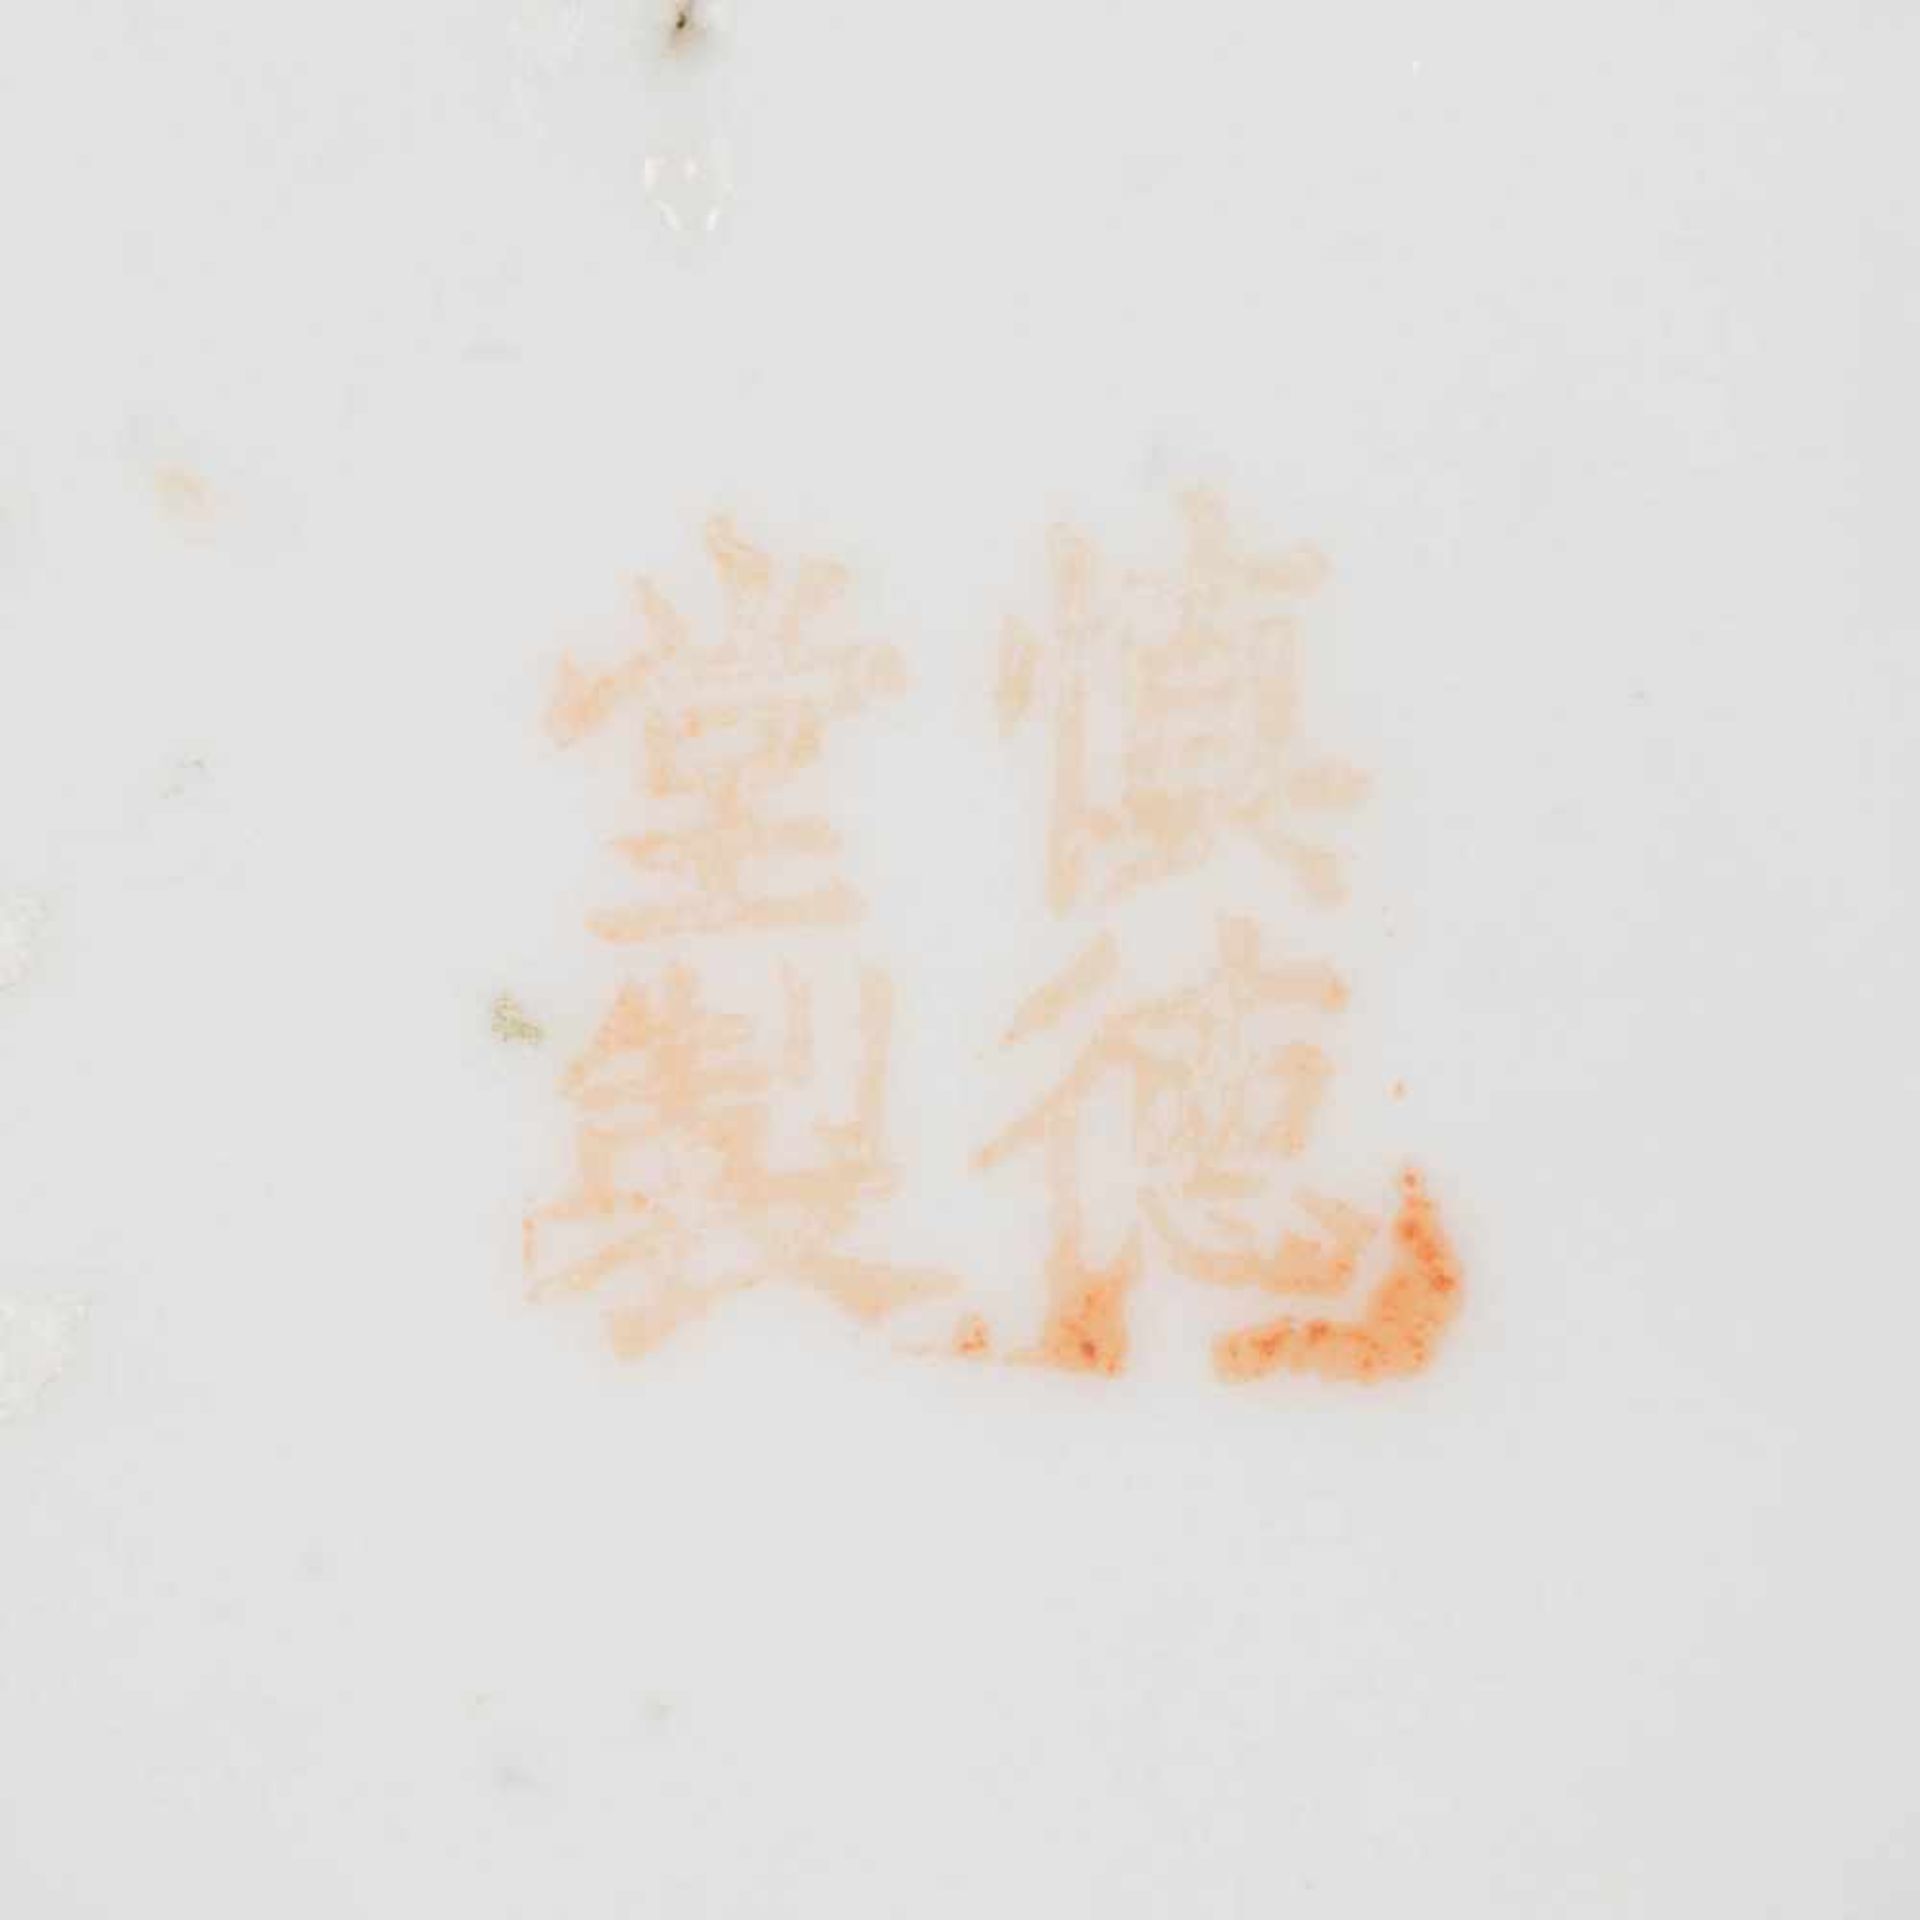 ZWEI KLEINE VASEN China, um 1900 Porzellan, polychrome Aufglasurbemalung. H. 22,5 cm-22,6 cm. - Image 5 of 6